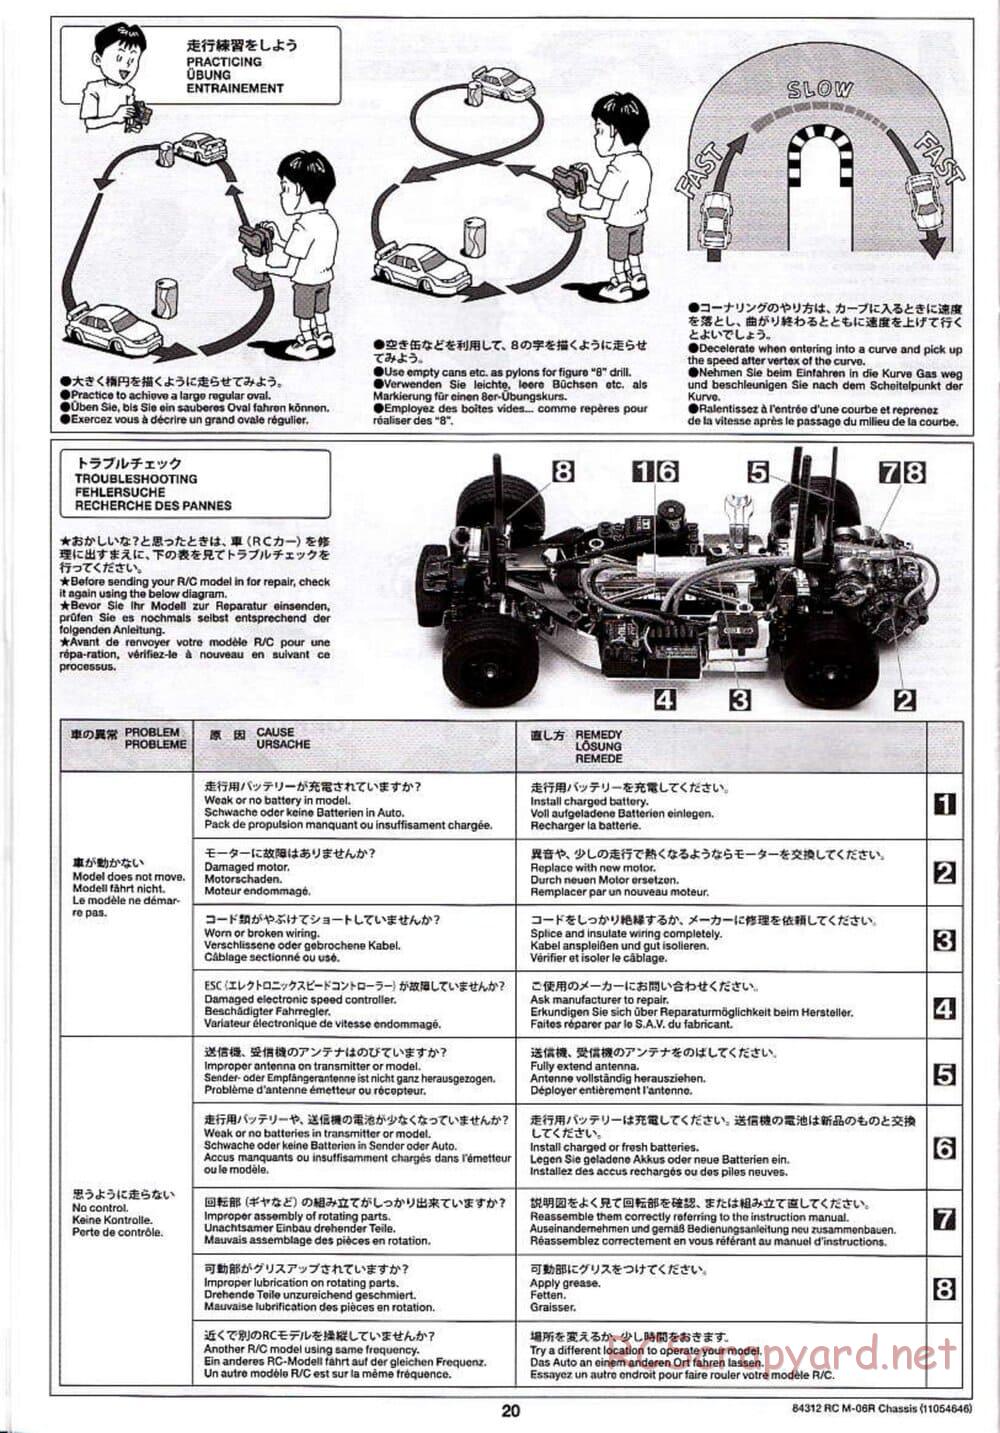 Tamiya - M-06R Chassis - Manual - Page 20